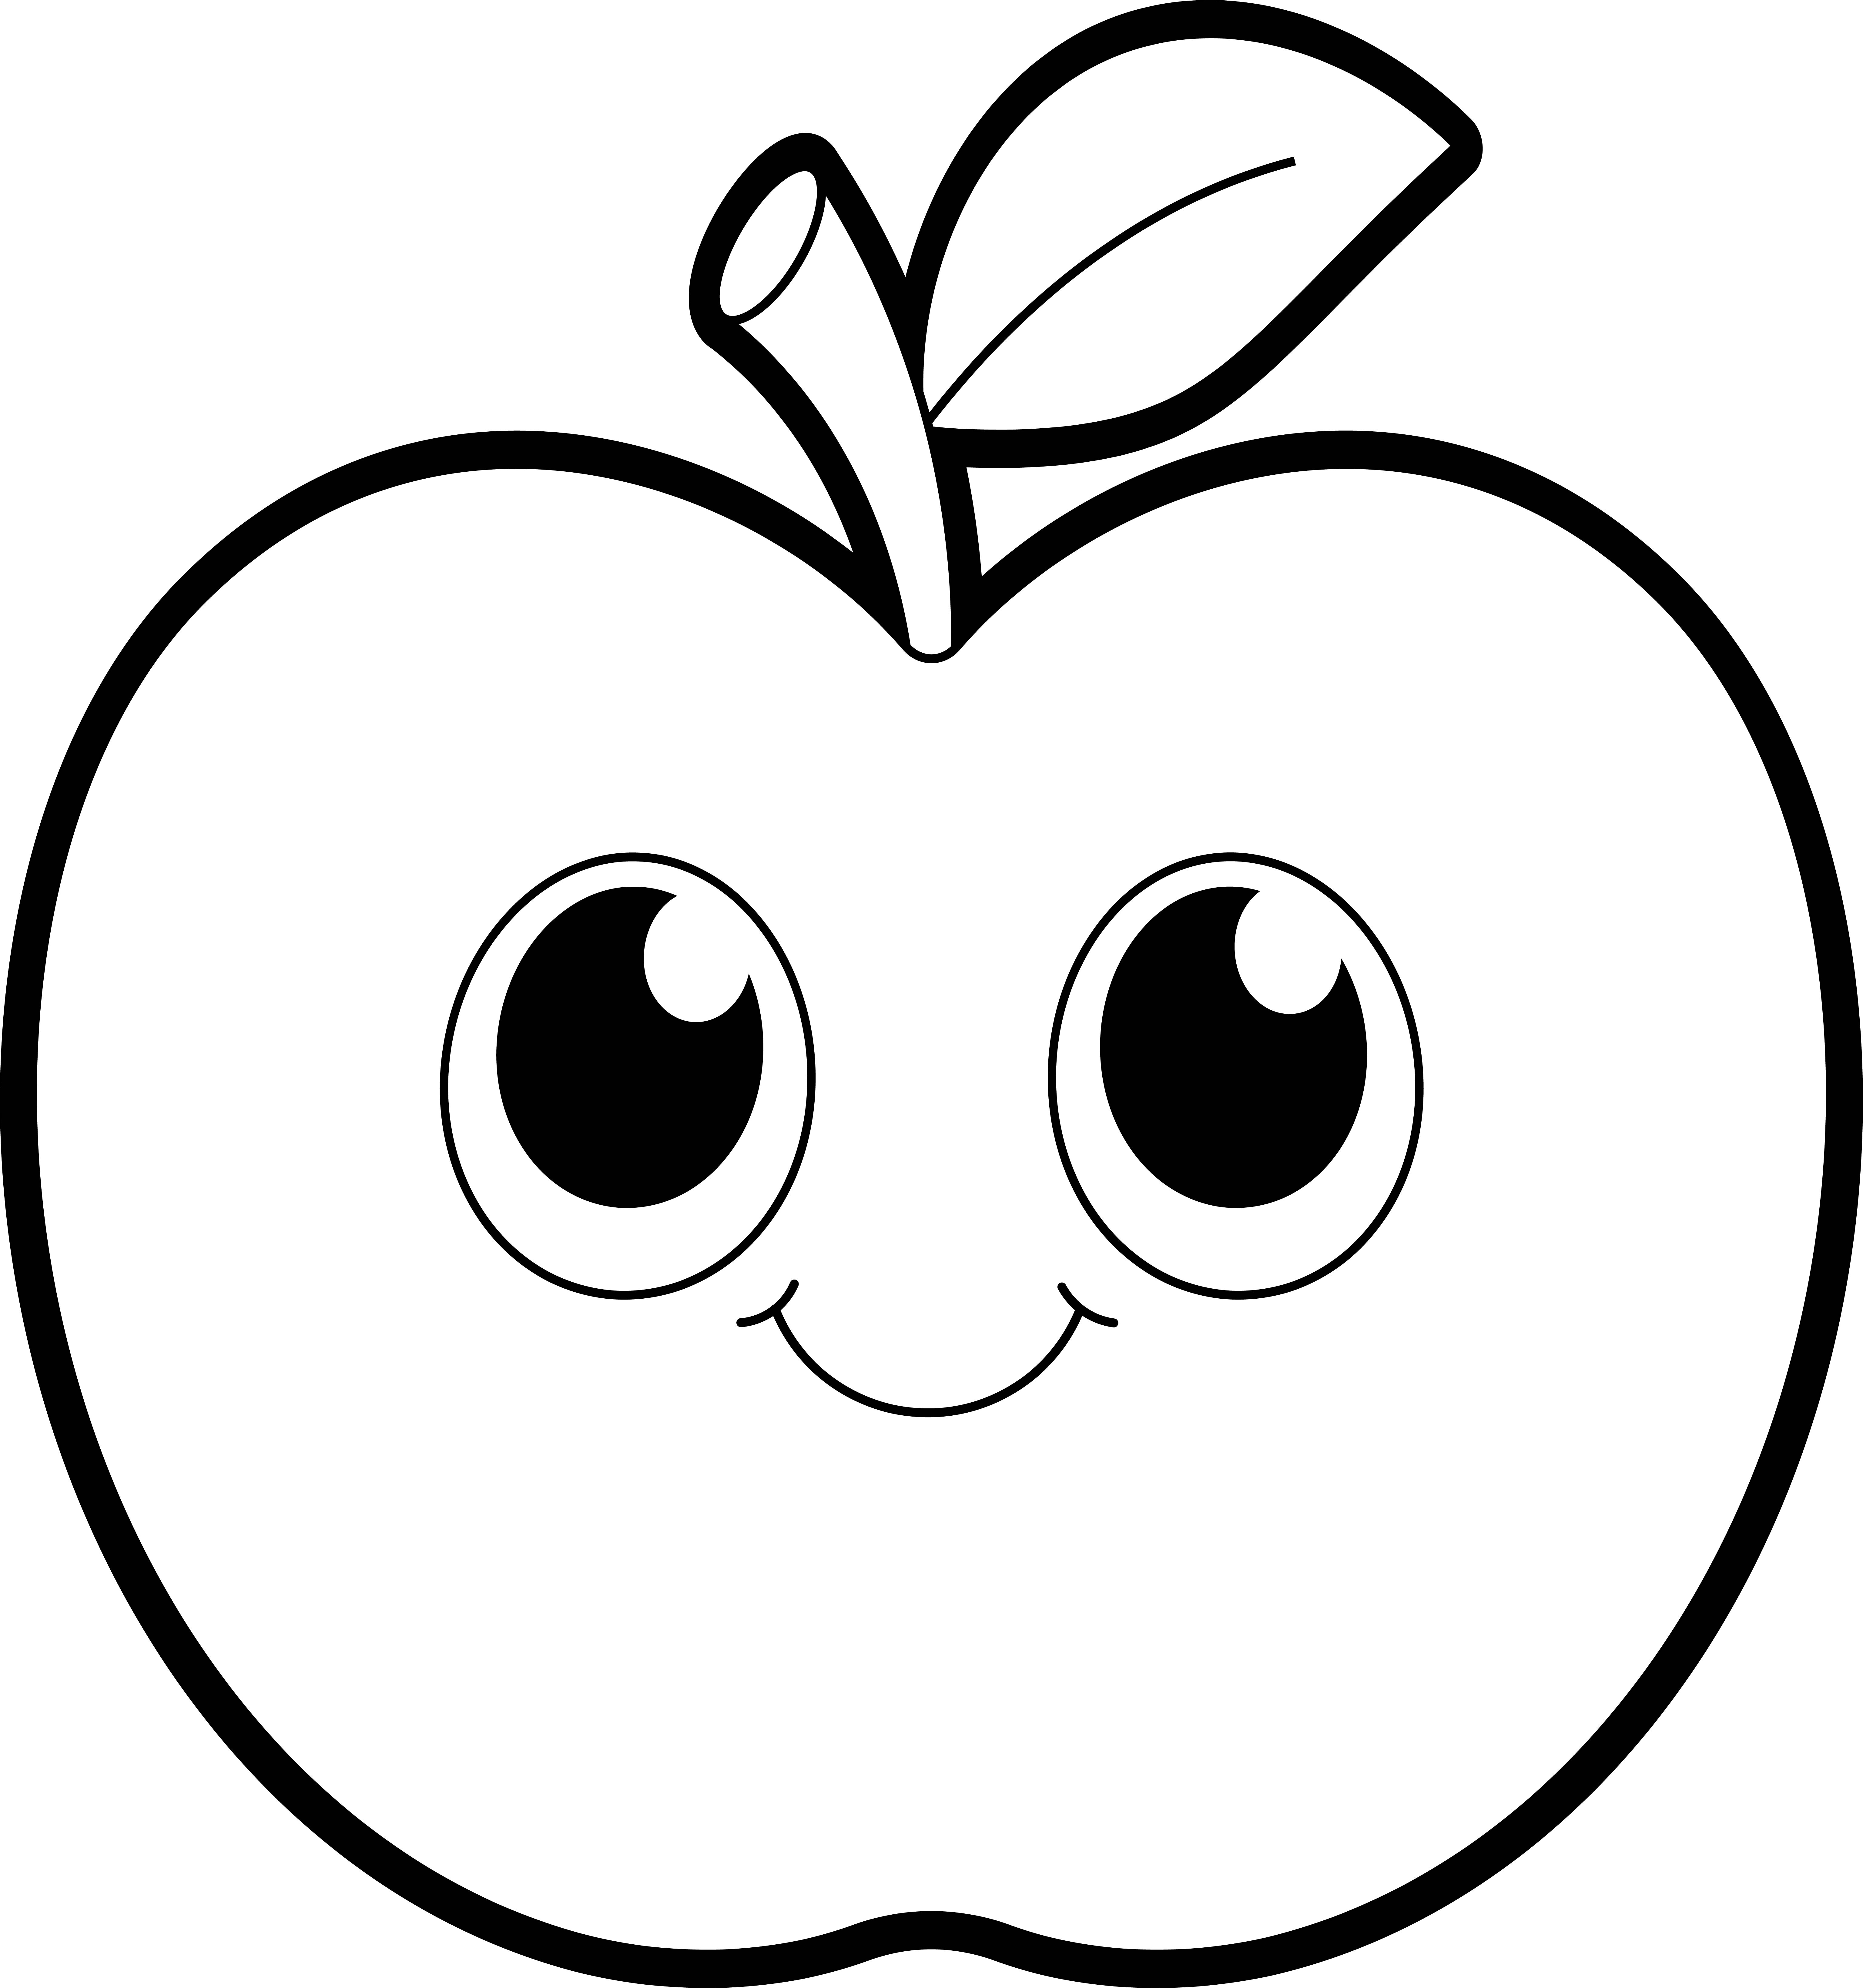 Раскраска круглое яблоко с красивыми глазами формата А4 в высоком качестве